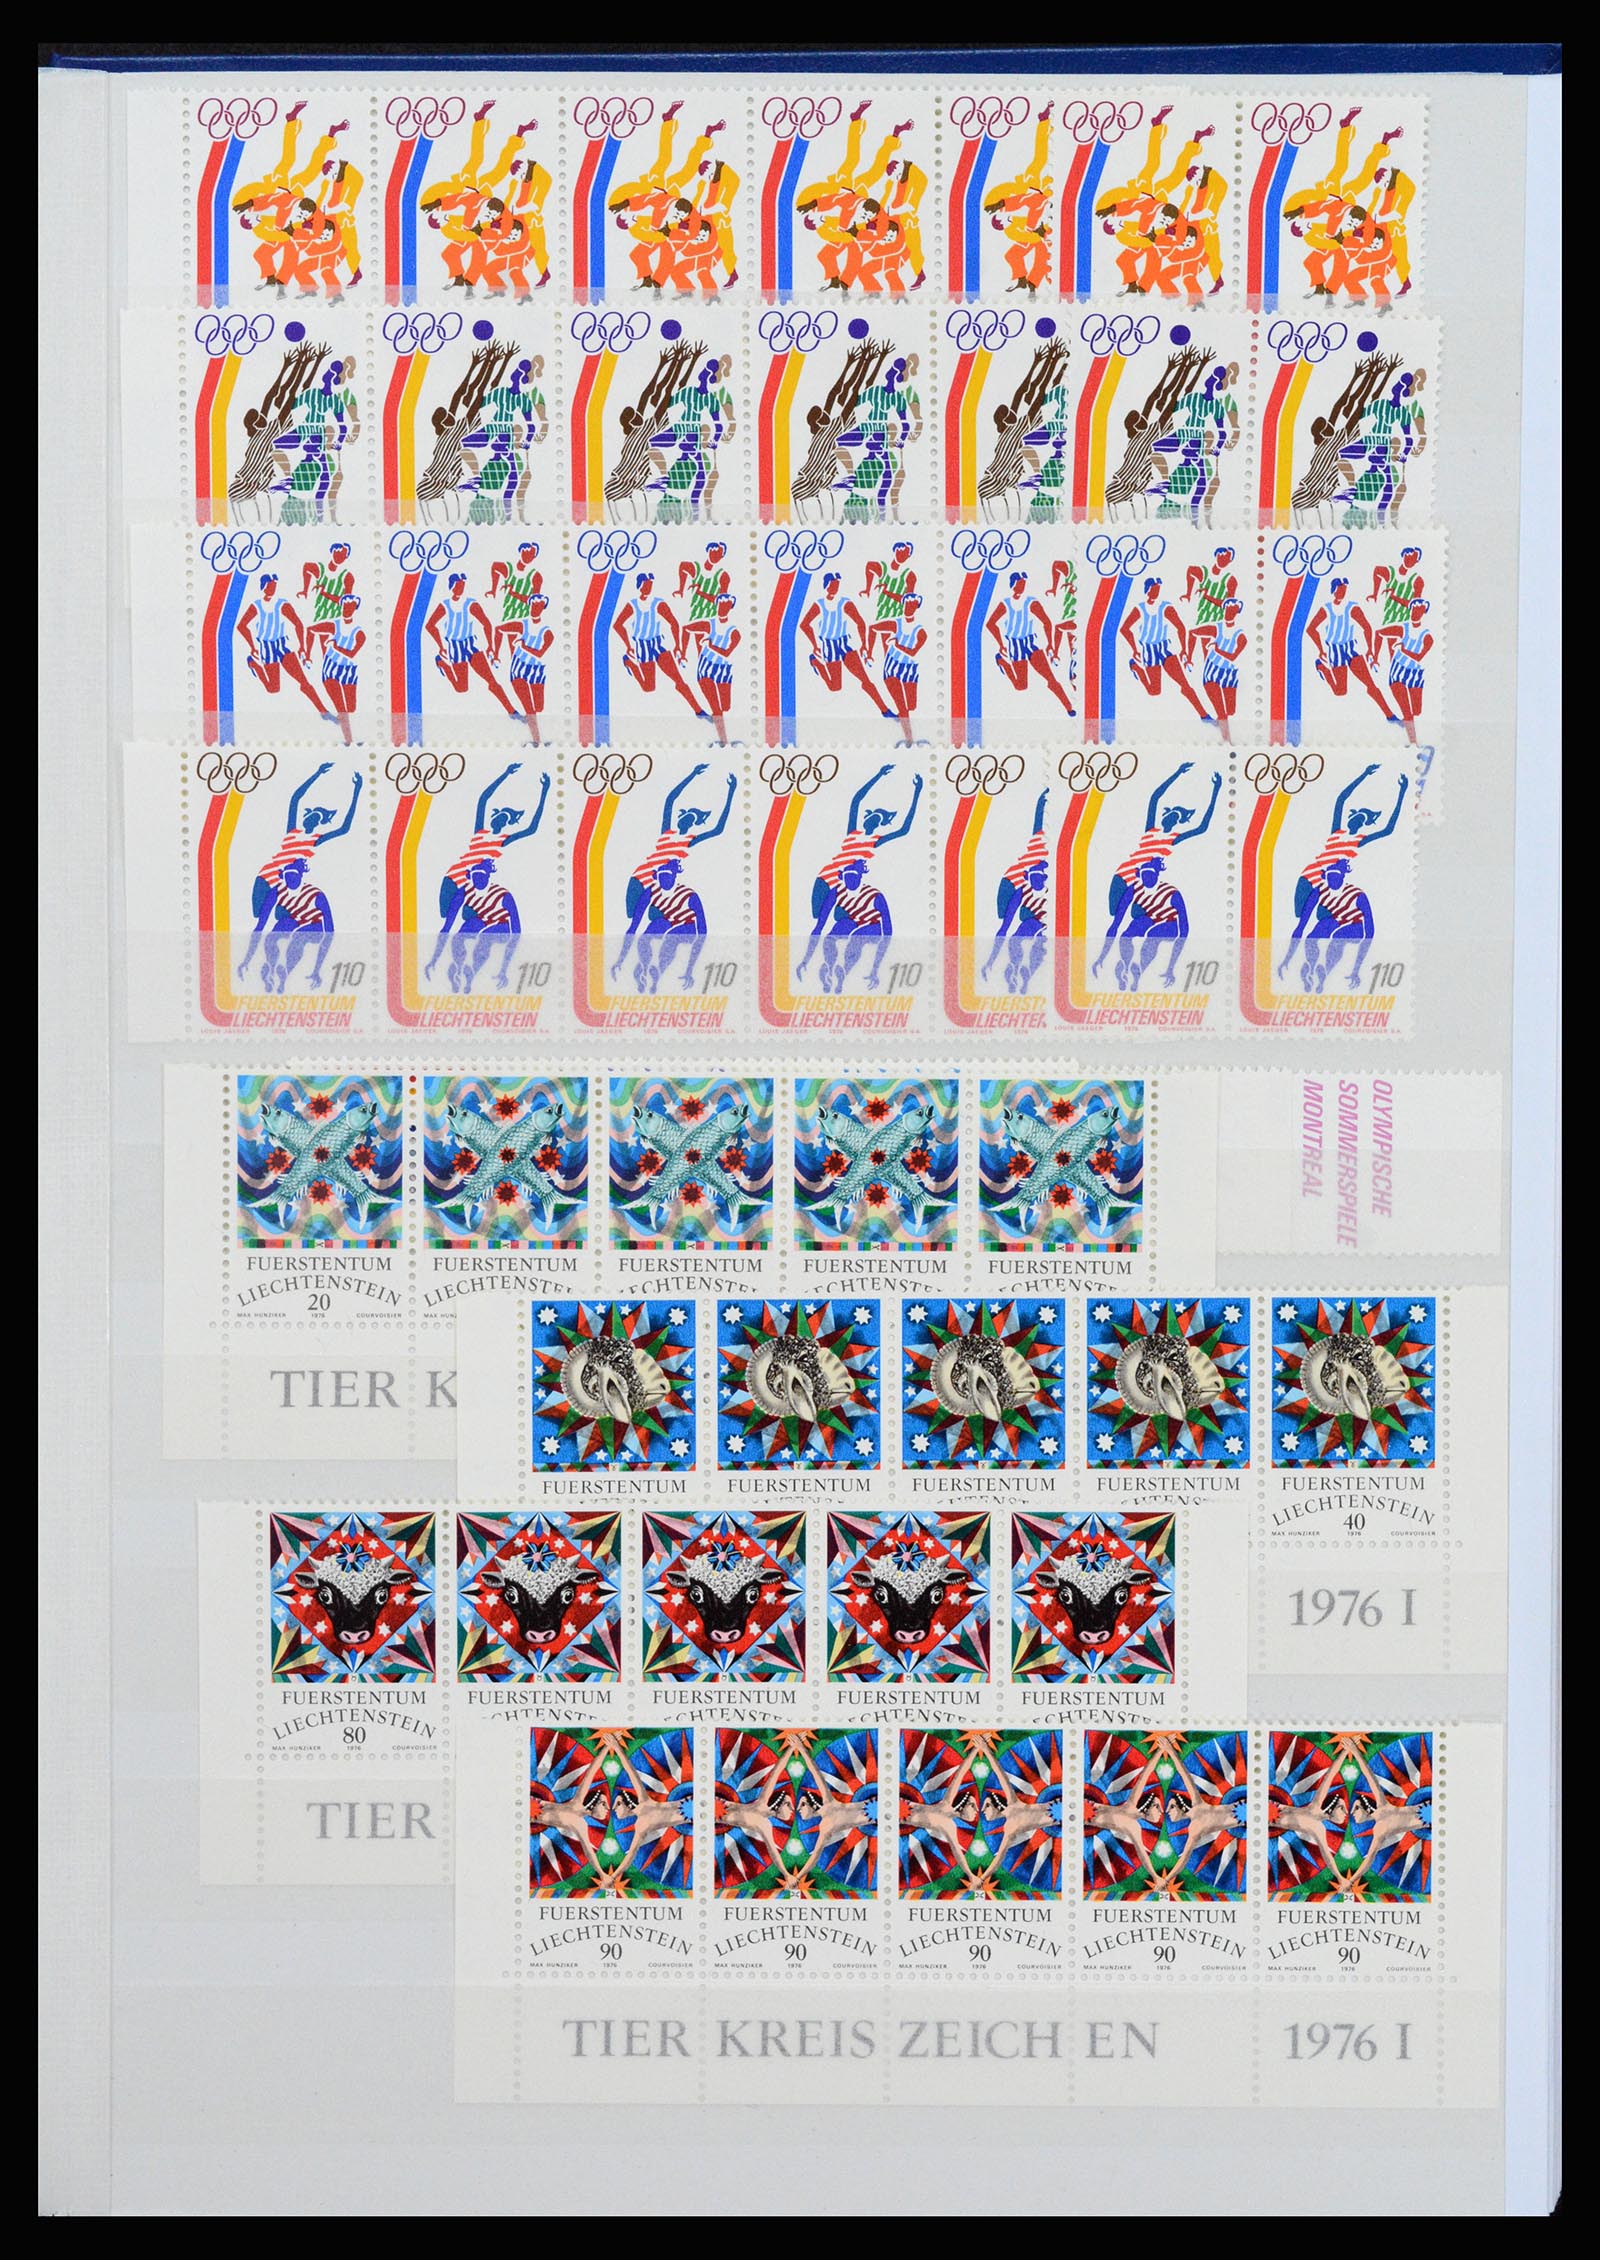 37261 043 - Stamp collection 37261 Liechtenstein 1961-1995.